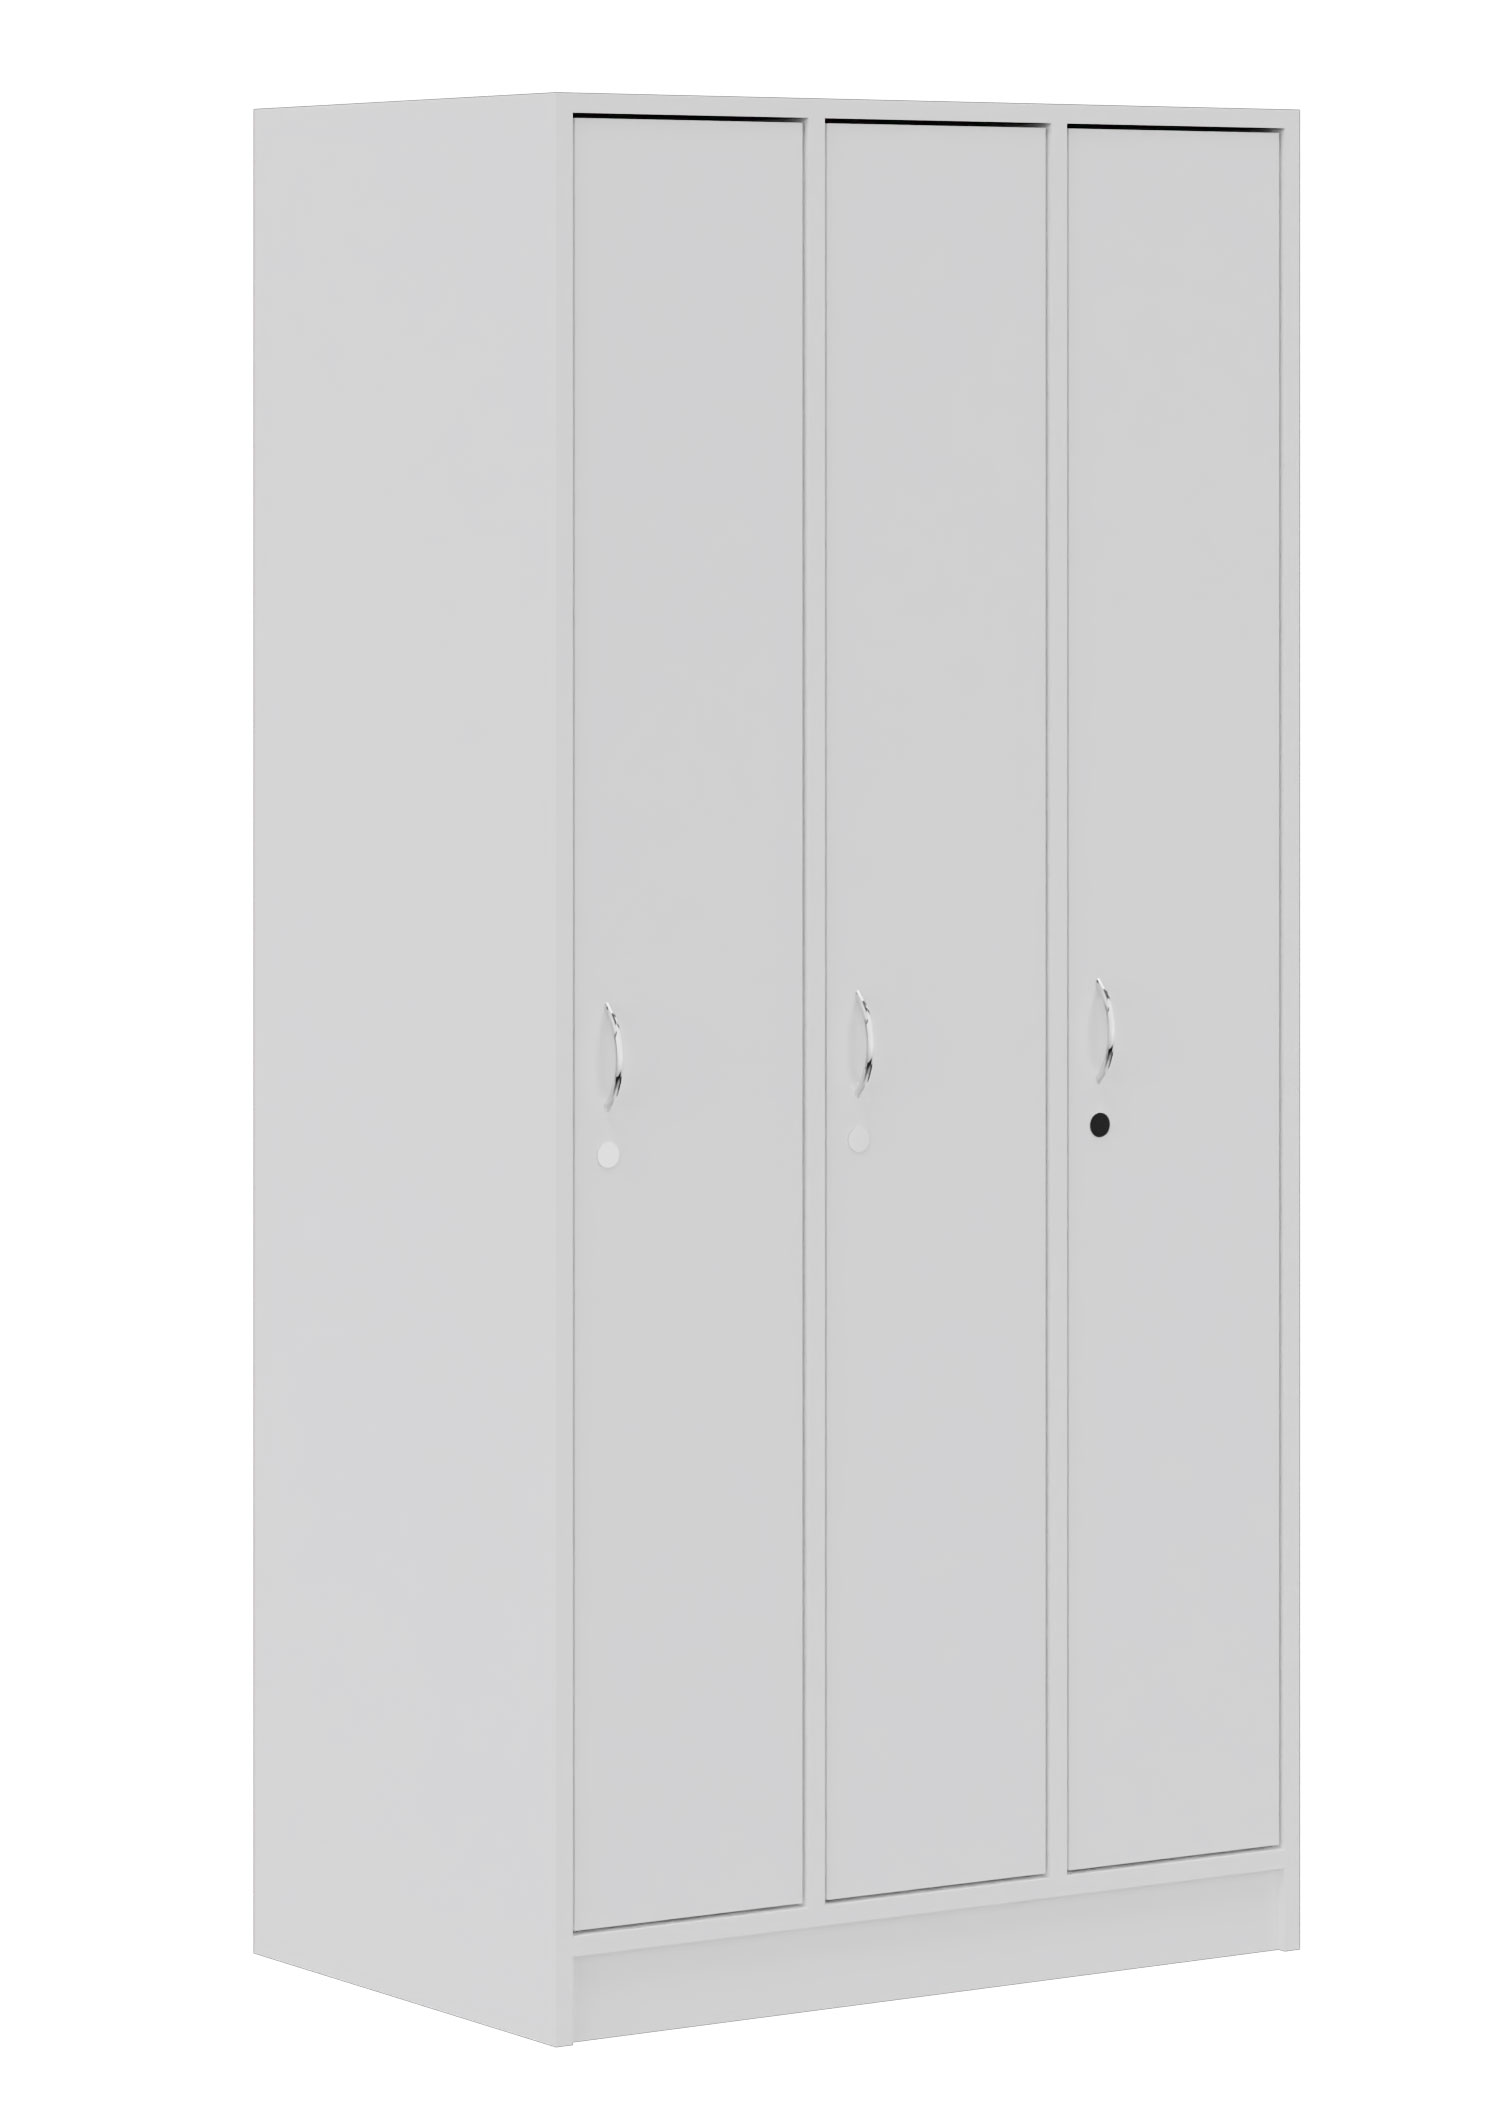 Garderobenschrank mit 3 Türen, Breite 90 cm